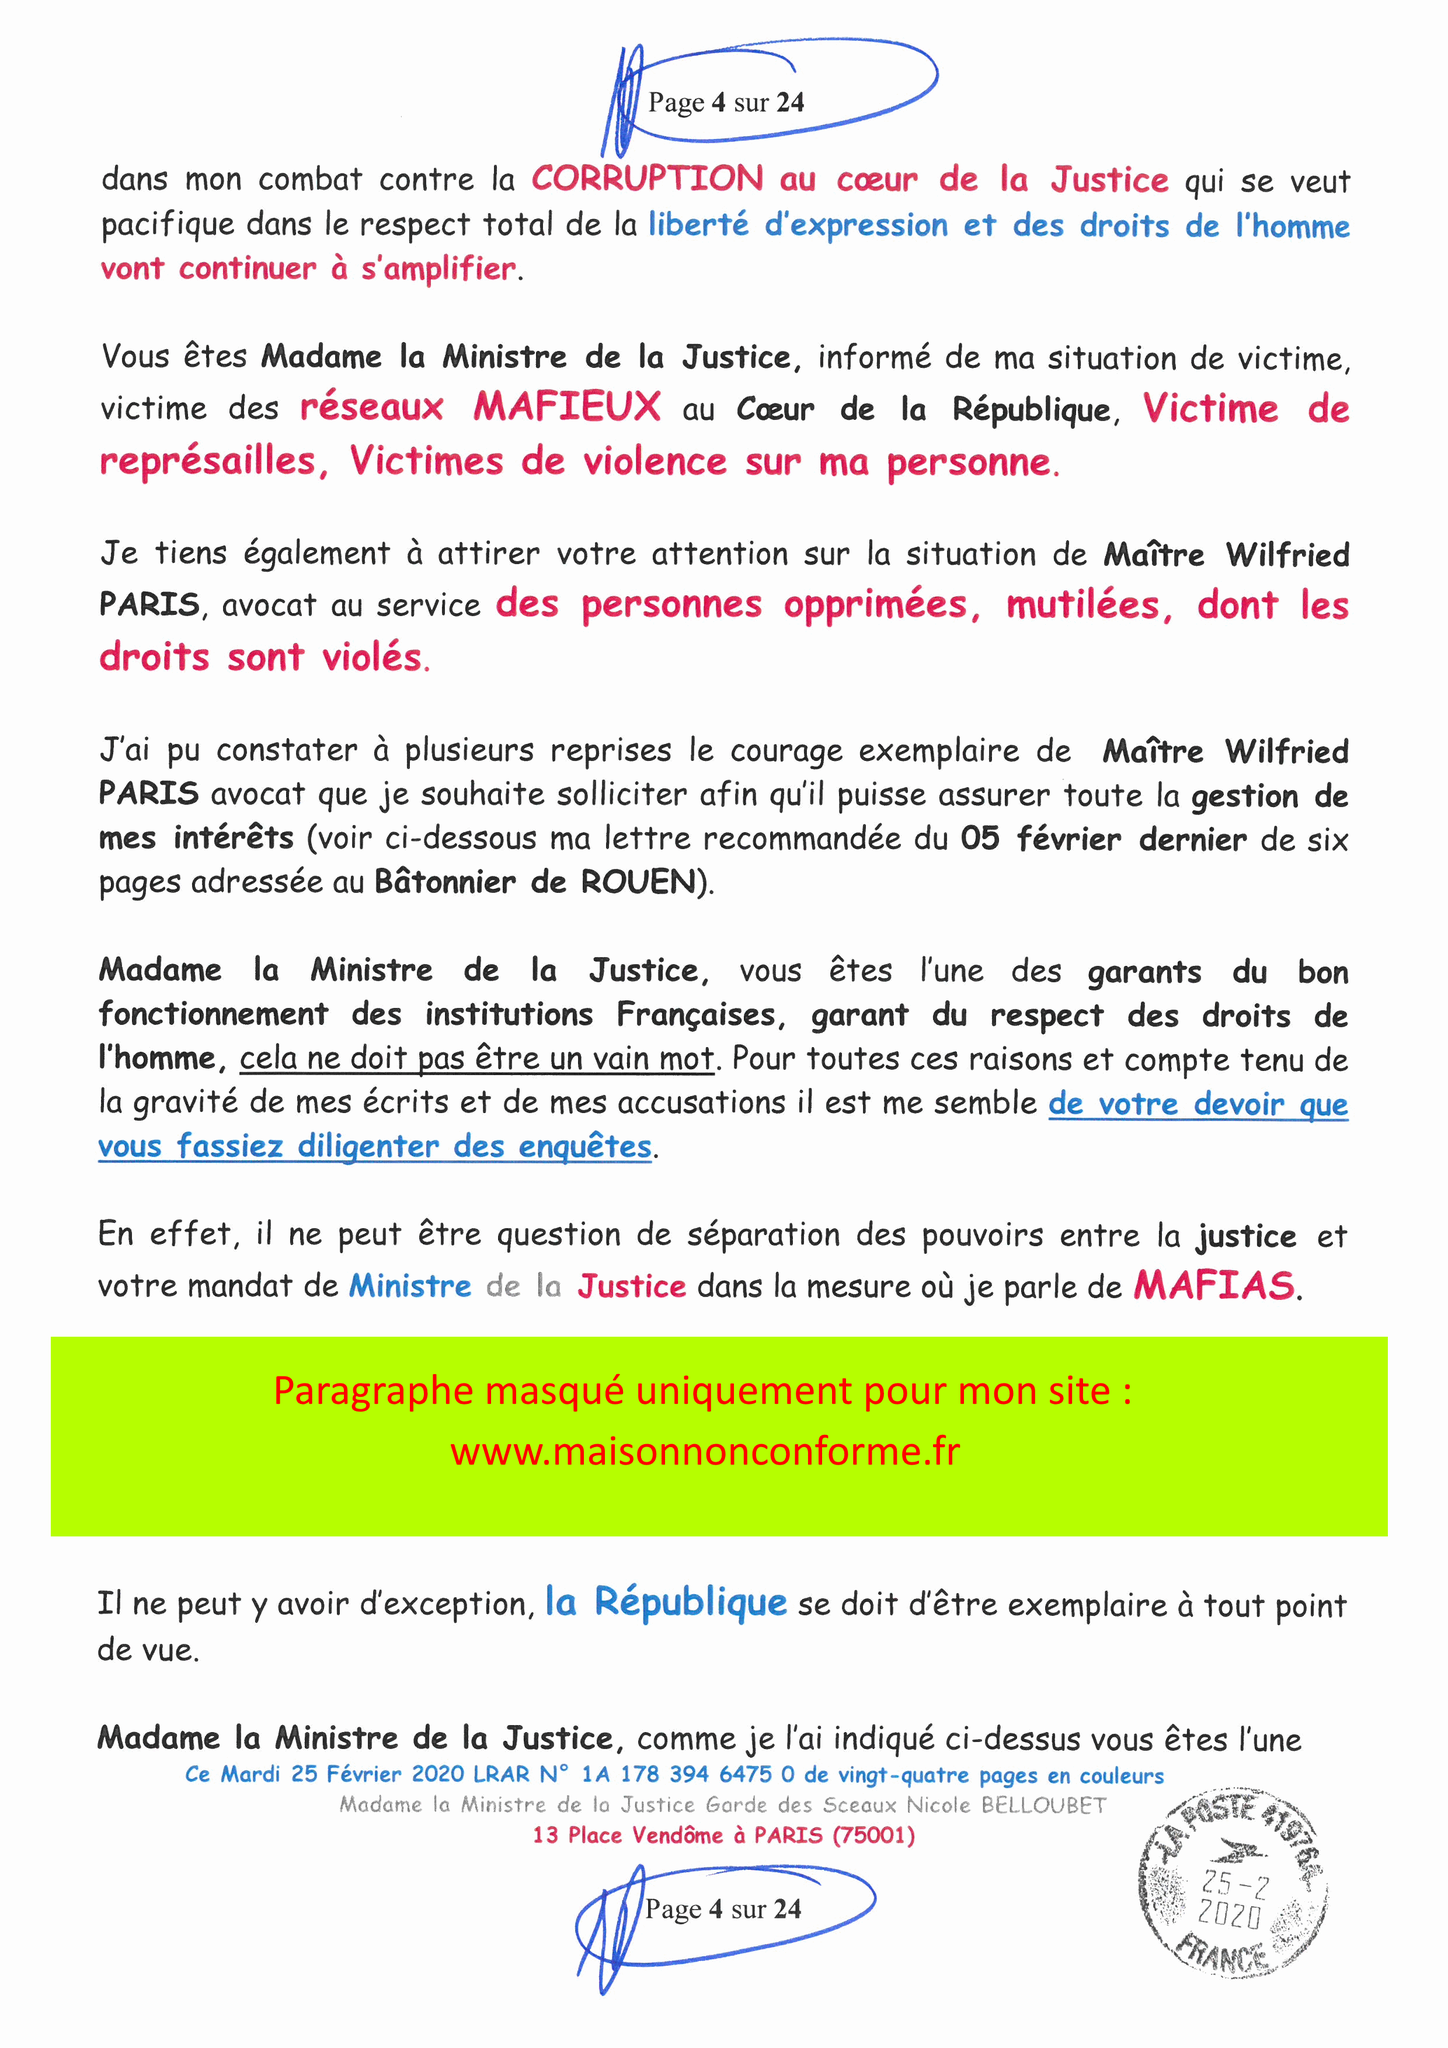 Ma LRAR à Madame Nicole BELLOUBET la Ministre de la Justice N0 1A 178 394 6475 0 Page 4 sur 24 en couleur  www.jesuispatrick.com www.jesuisvictime.fr www.alerte-rouge-france.fr